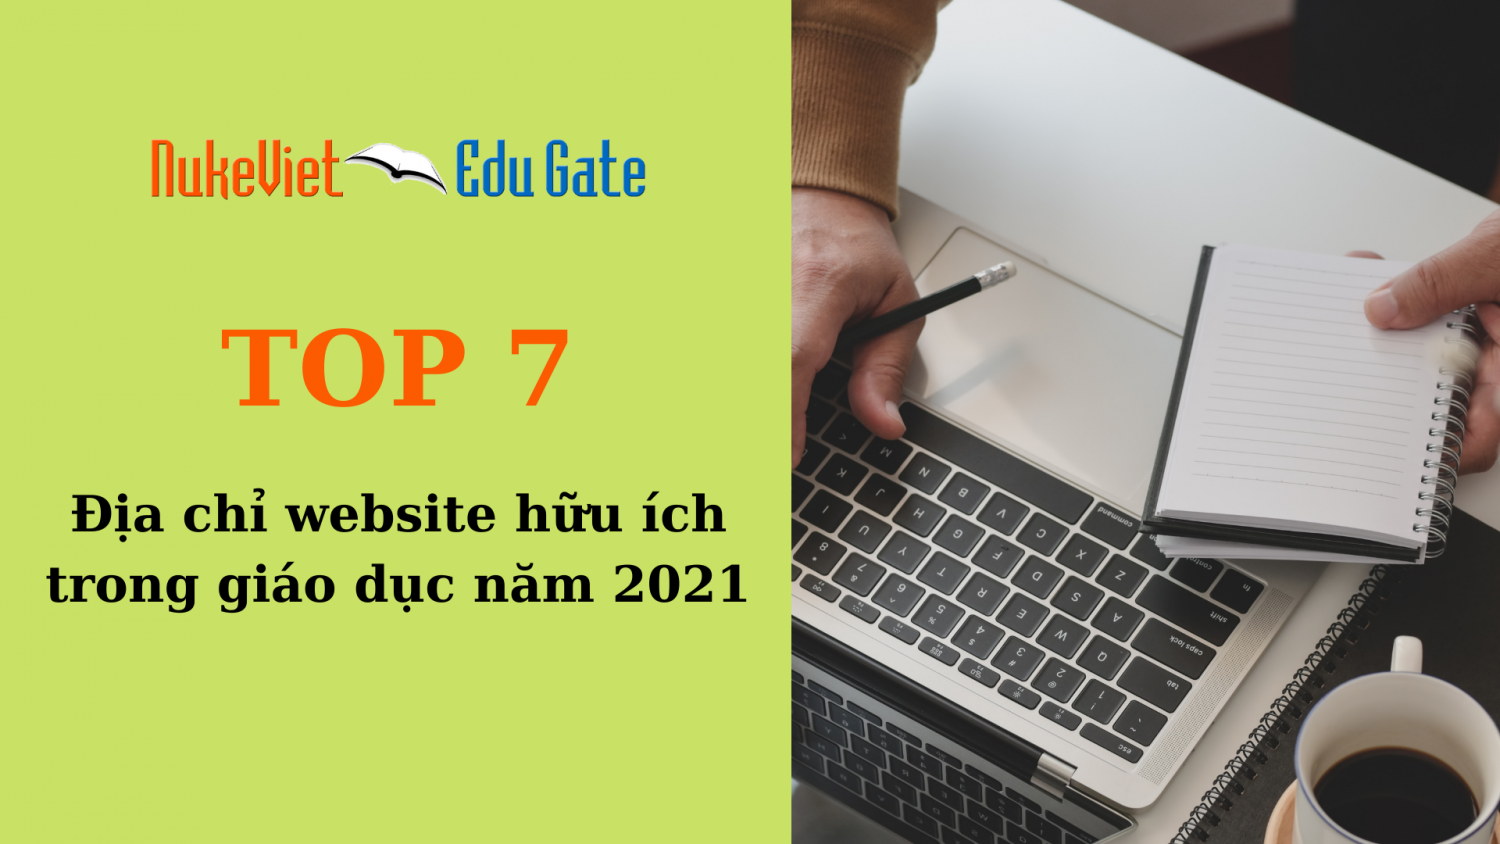 TOP 7 địa chỉ website hữu ích trong giáo dục năm 2021